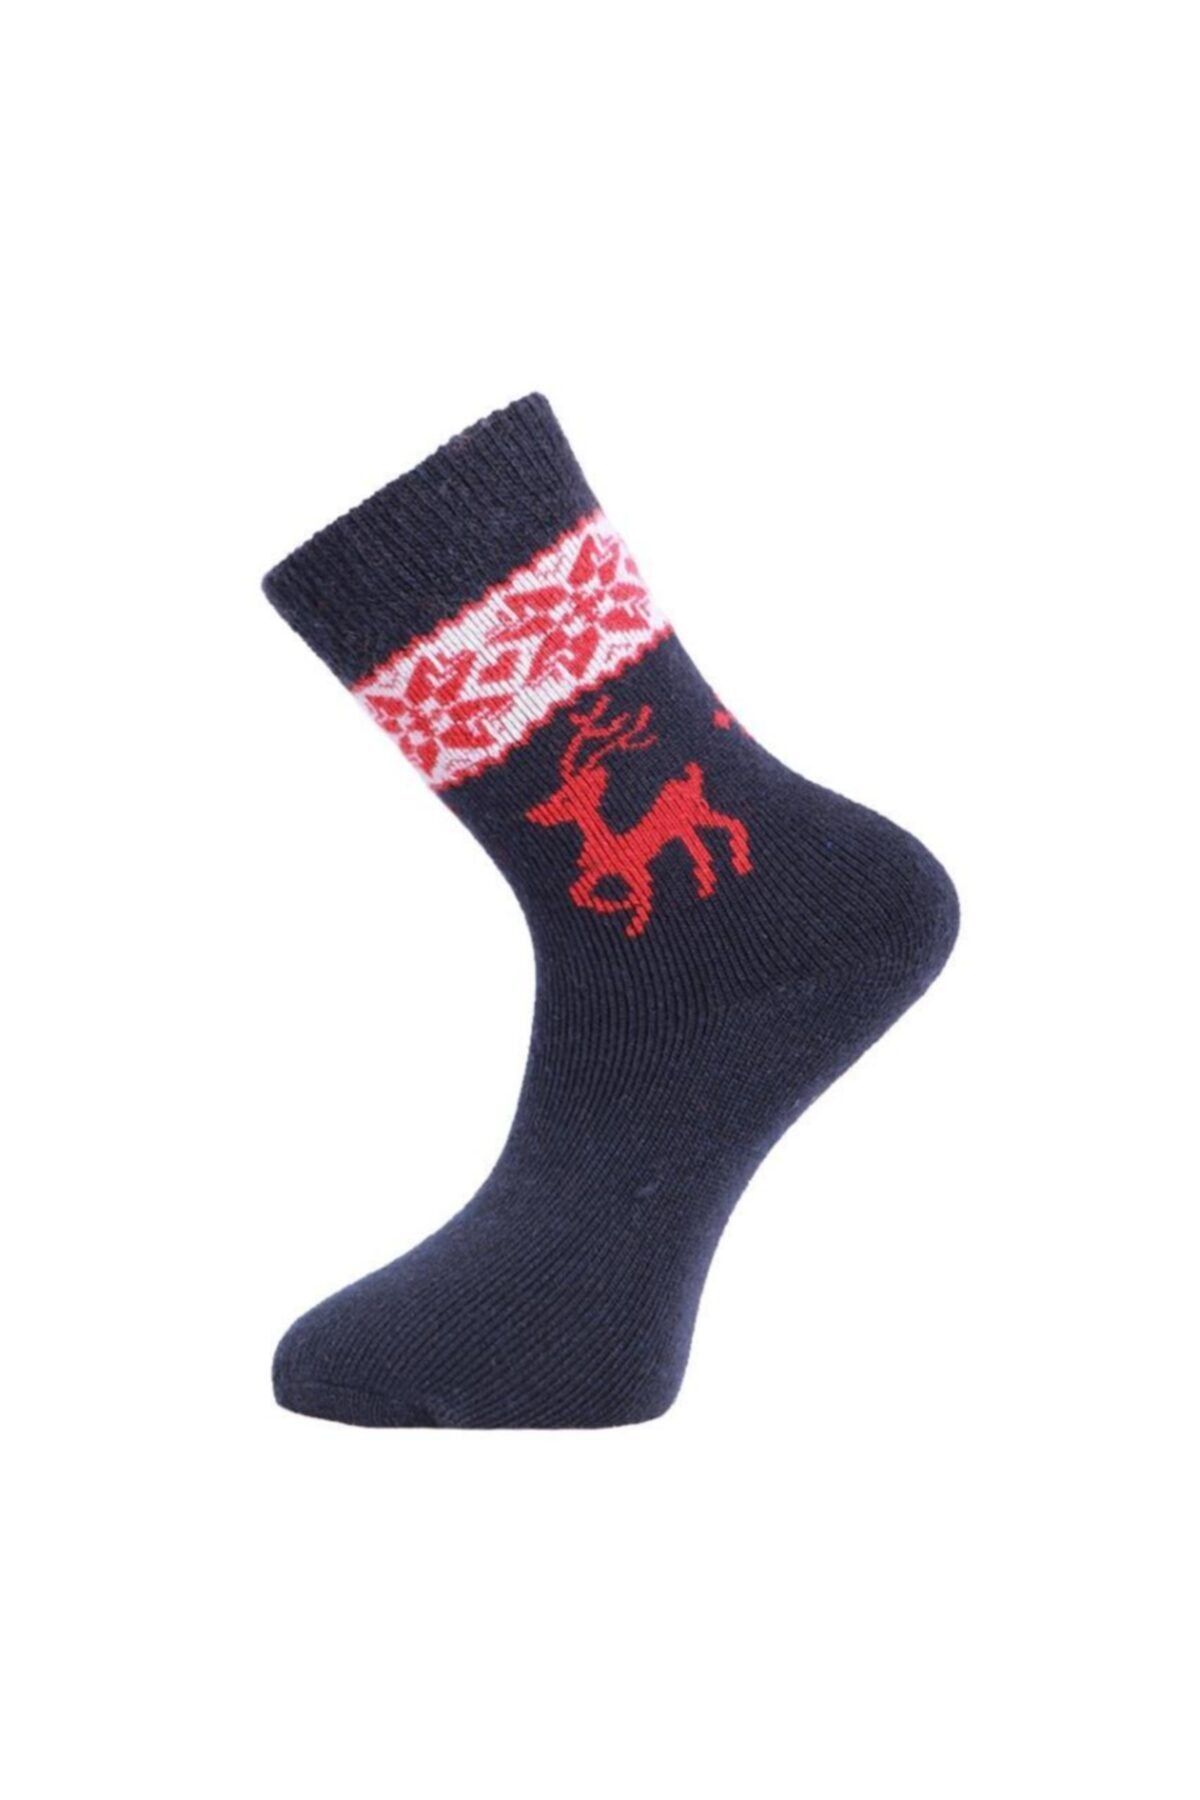 Panthzer Casual Wool Kaadın Çorap Lacivert/kırmızı